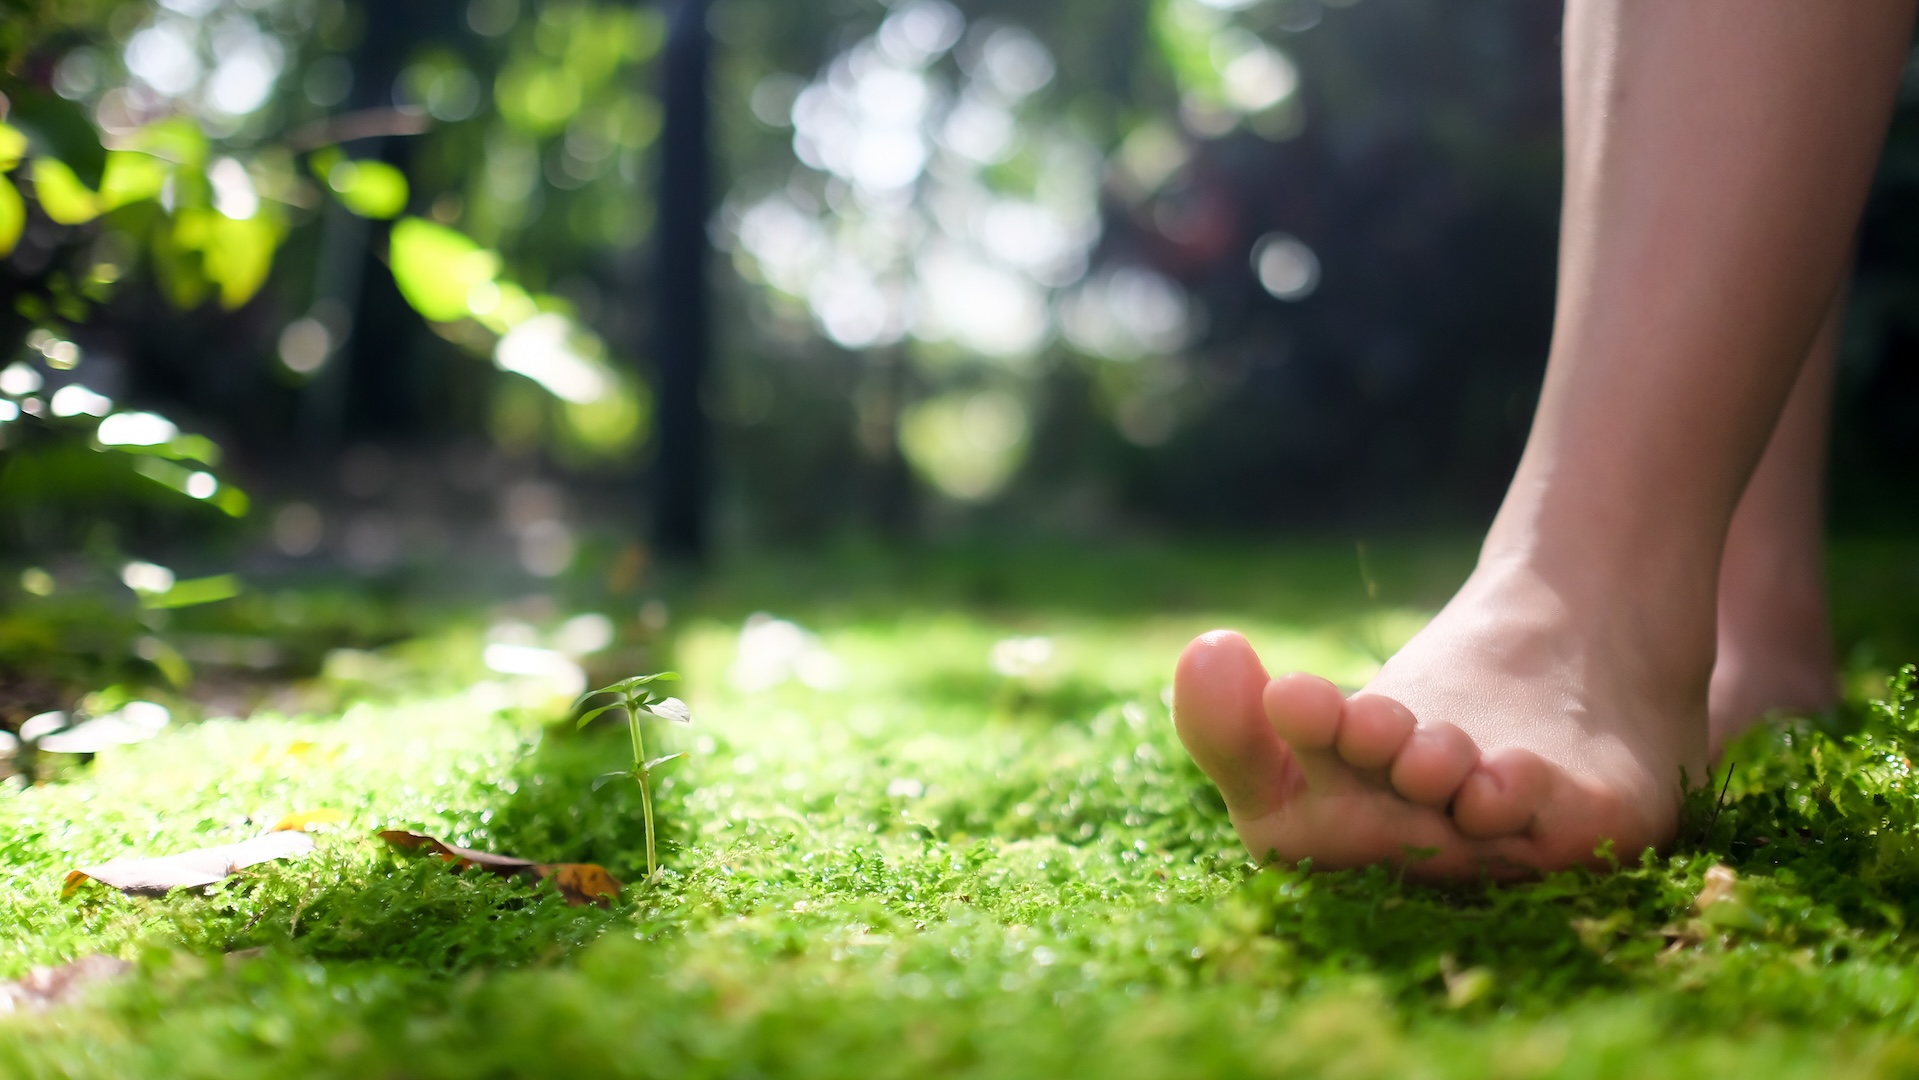 La foto muestra un primer plano del pie descalzo de una persona blanca mientras pisa un suave lecho de hierba.